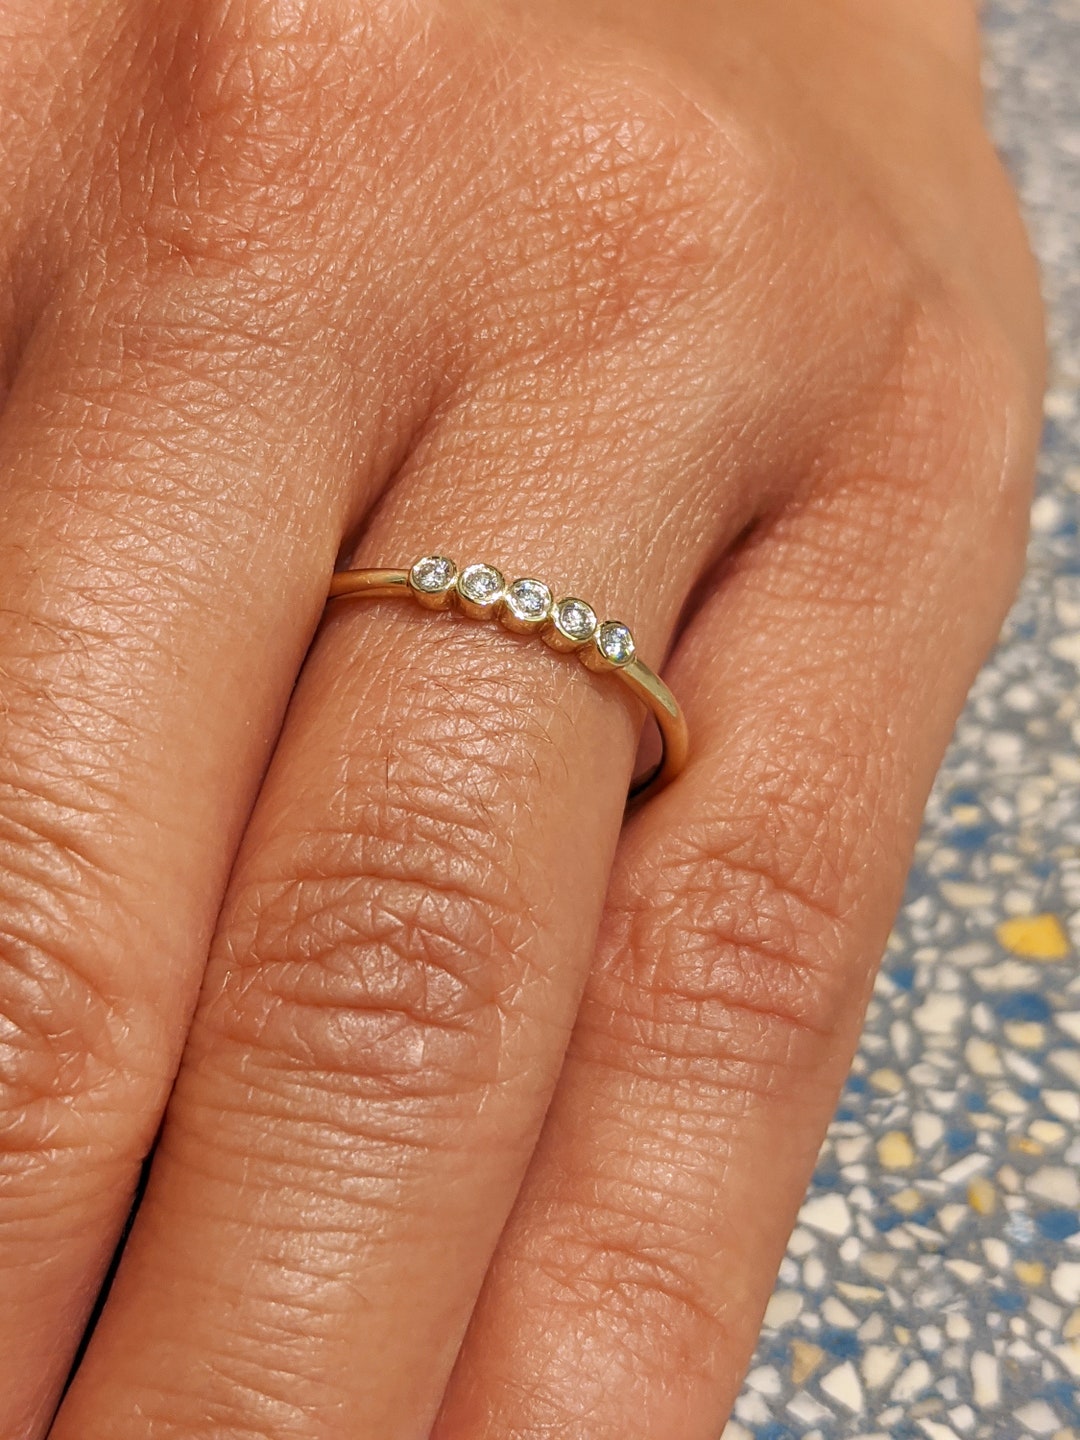 Engagement Ring Voyeur | James allen engagement rings, Engagement rings,  Bridal ring band